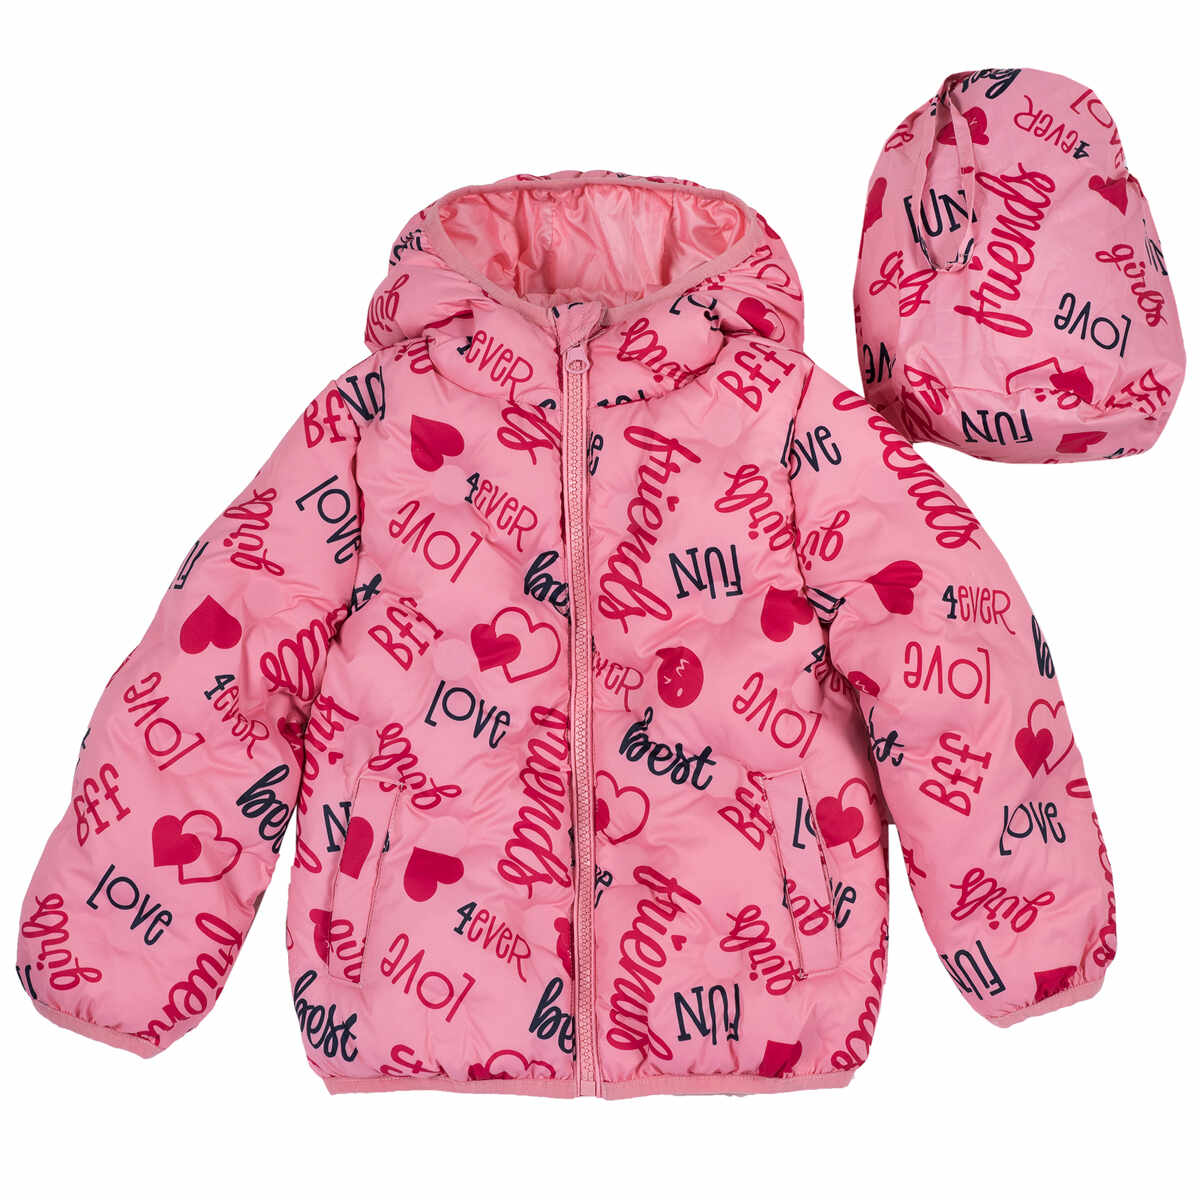 Jacheta copii Chicco, impermeabila si matlasata, roz, 87410 